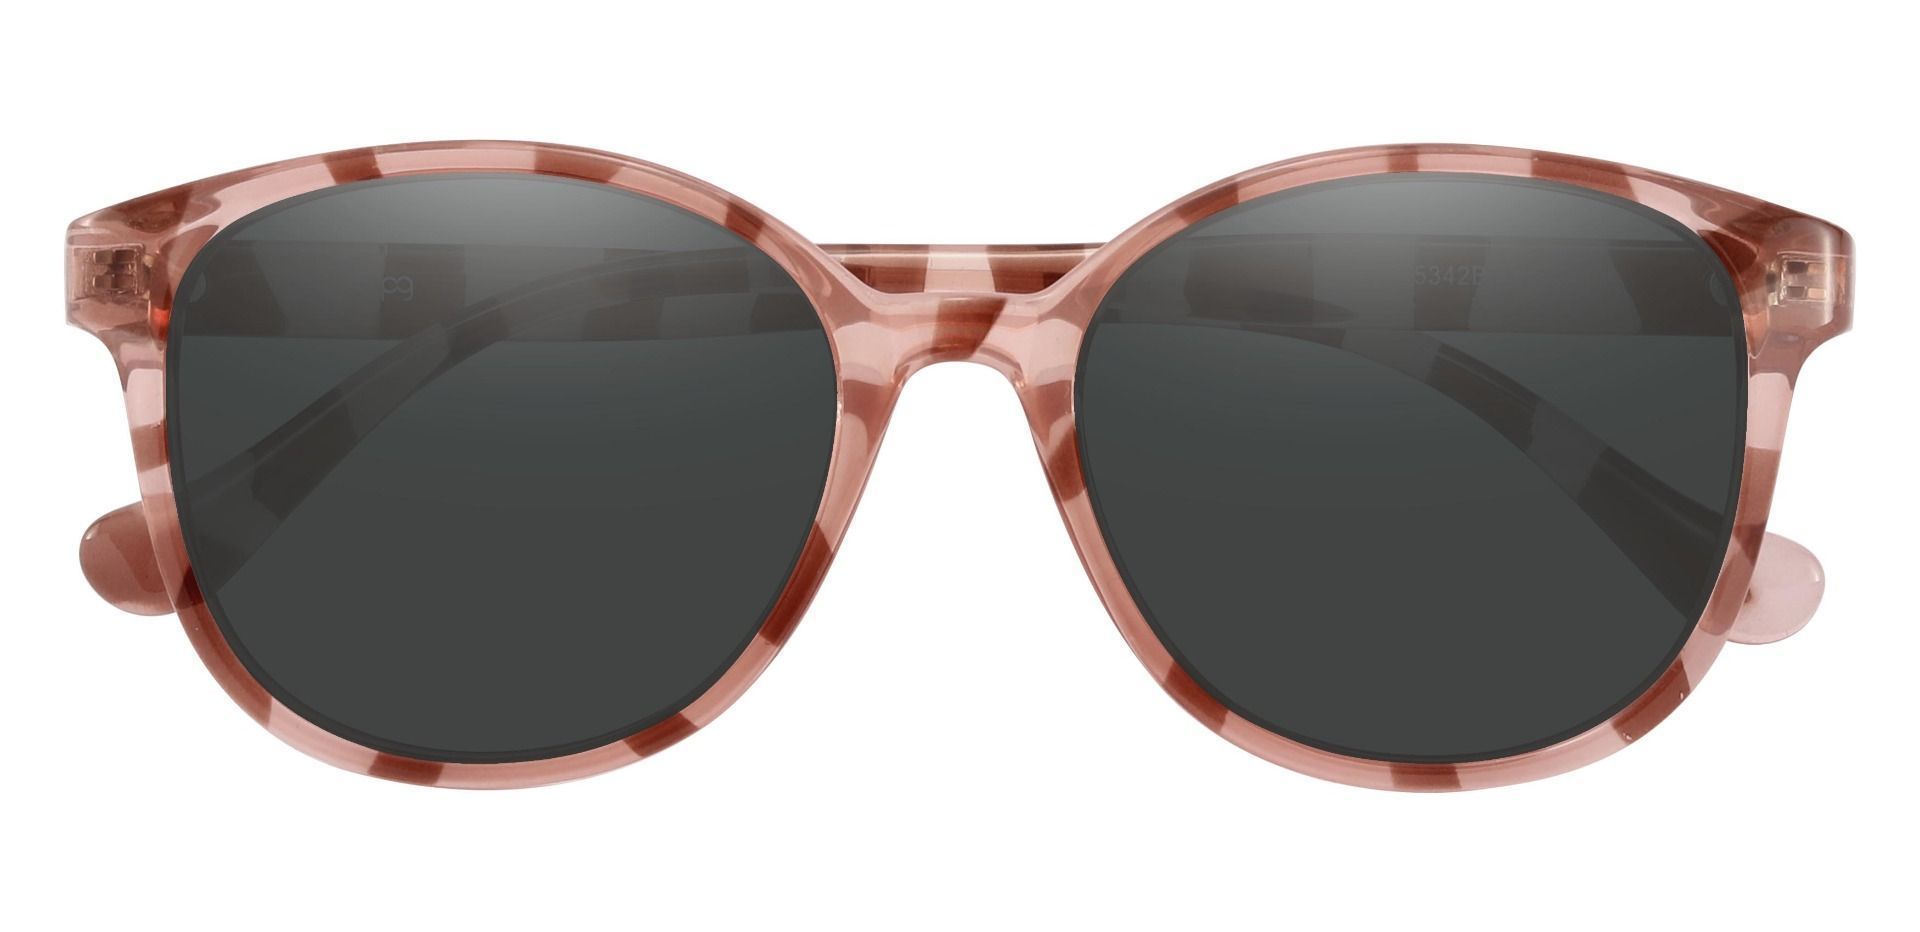 Carrick Square Prescription Sunglasses - Multi Color Frame With Gray Lenses